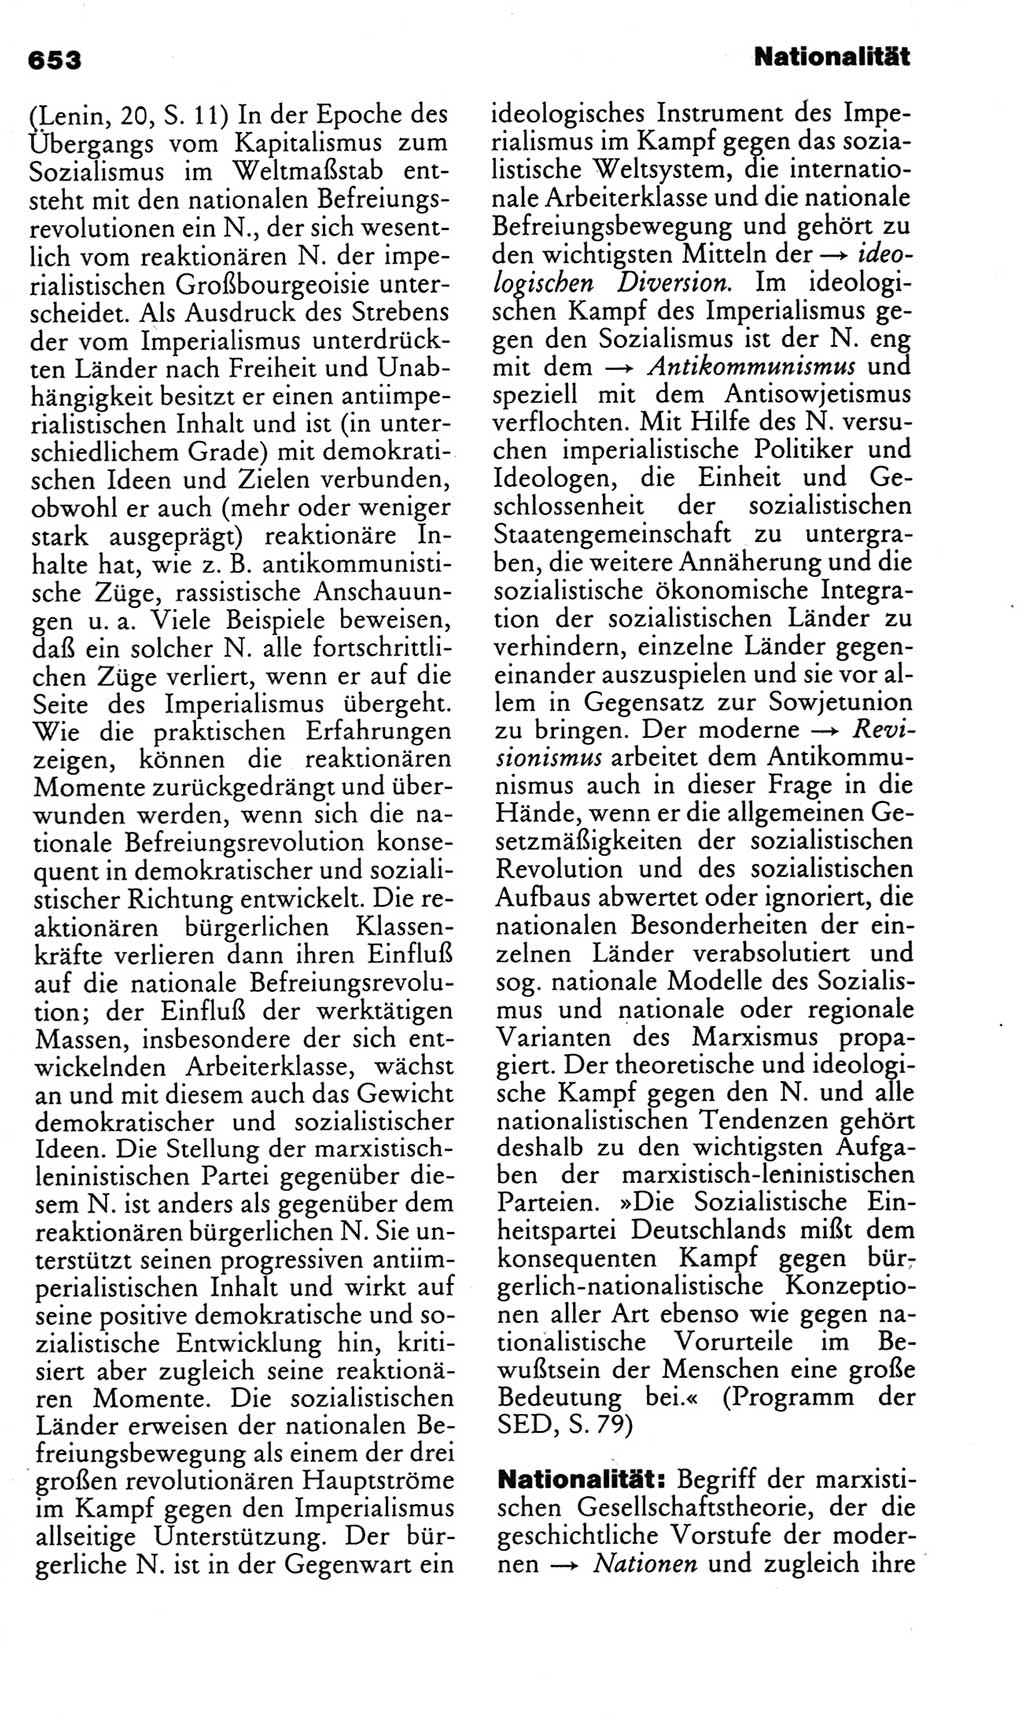 Kleines politisches Wörterbuch [Deutsche Demokratische Republik (DDR)] 1983, Seite 653 (Kl. pol. Wb. DDR 1983, S. 653)